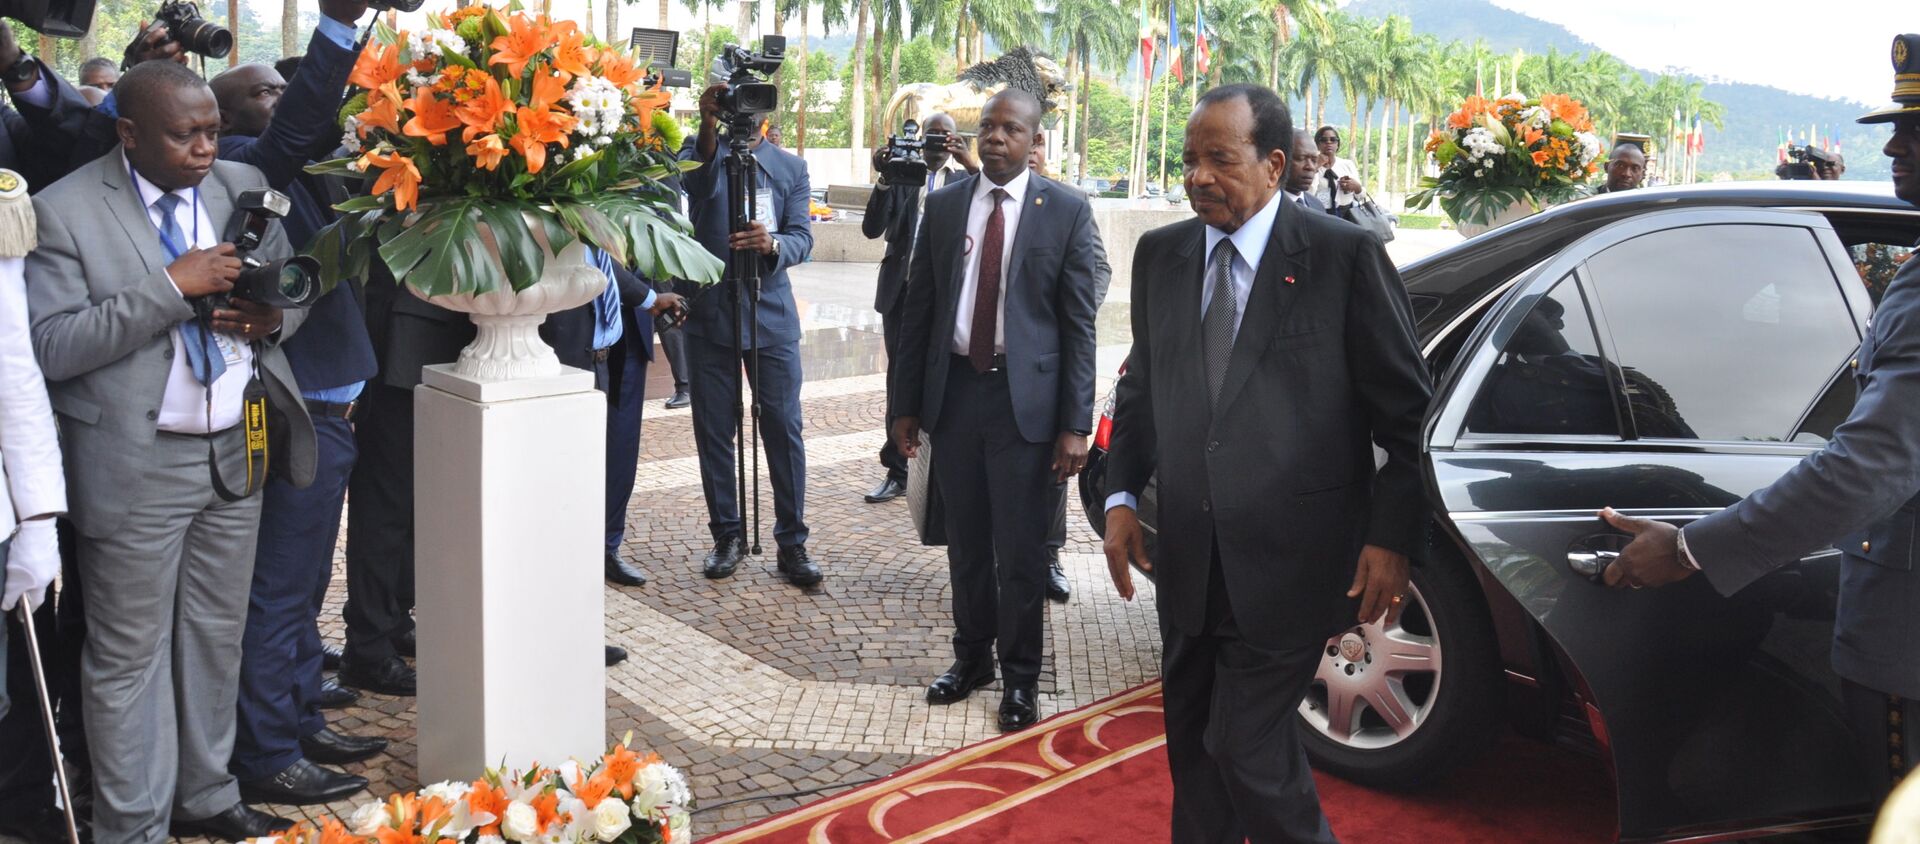 Arrivée du Président camerounais Paul Biya, également président de la Cemac, au sommet extraordinaire de la Cemac à Yaoundé le 22 novembre 2019. - Sputnik Afrique, 1920, 26.11.2019